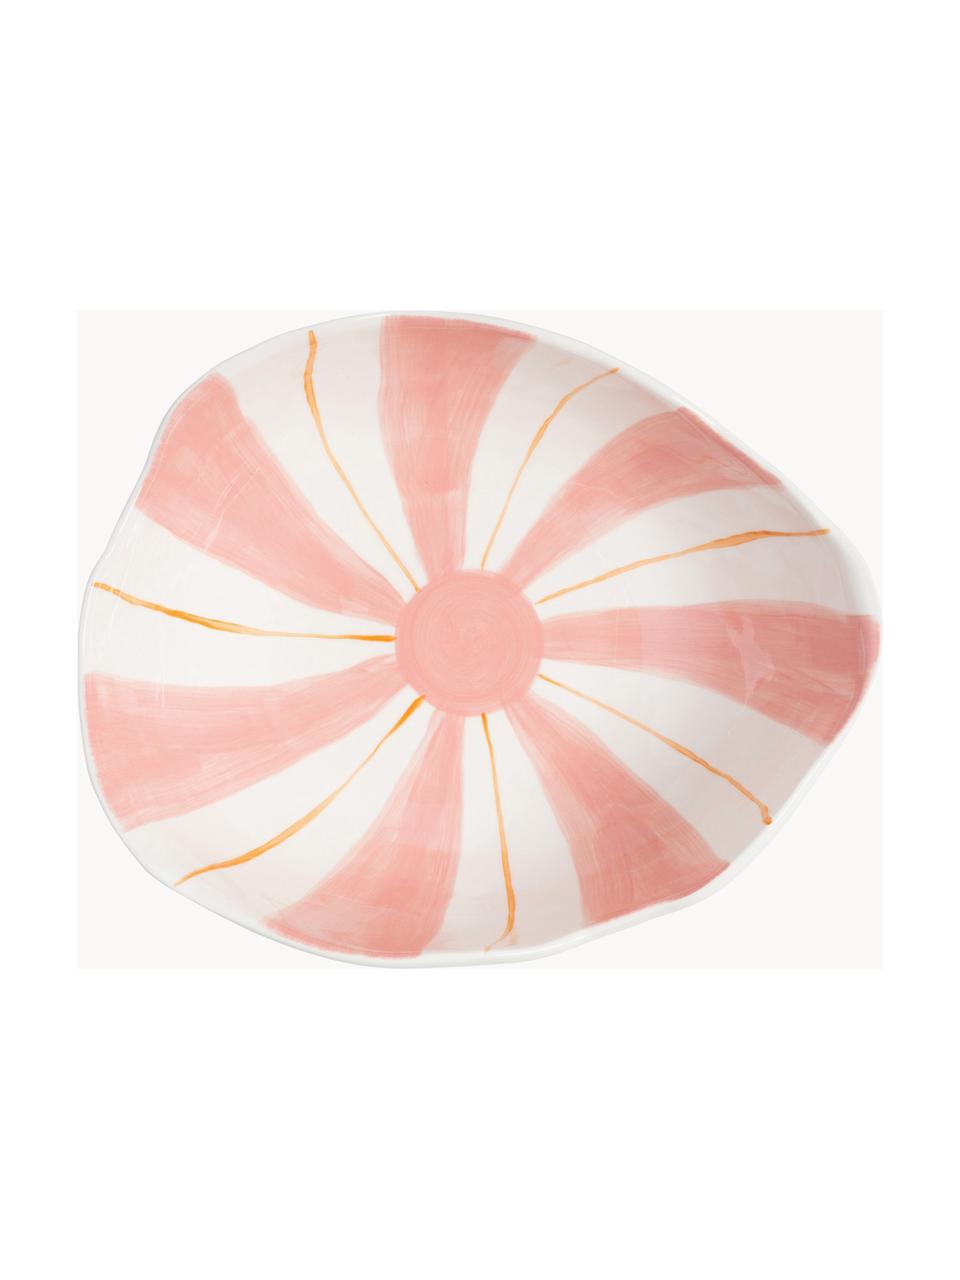 Cuenco de porcelana Ray, Porcelana esmaltado, Rosa pálido, blanco, naranja, An 27 x Al 10 cm